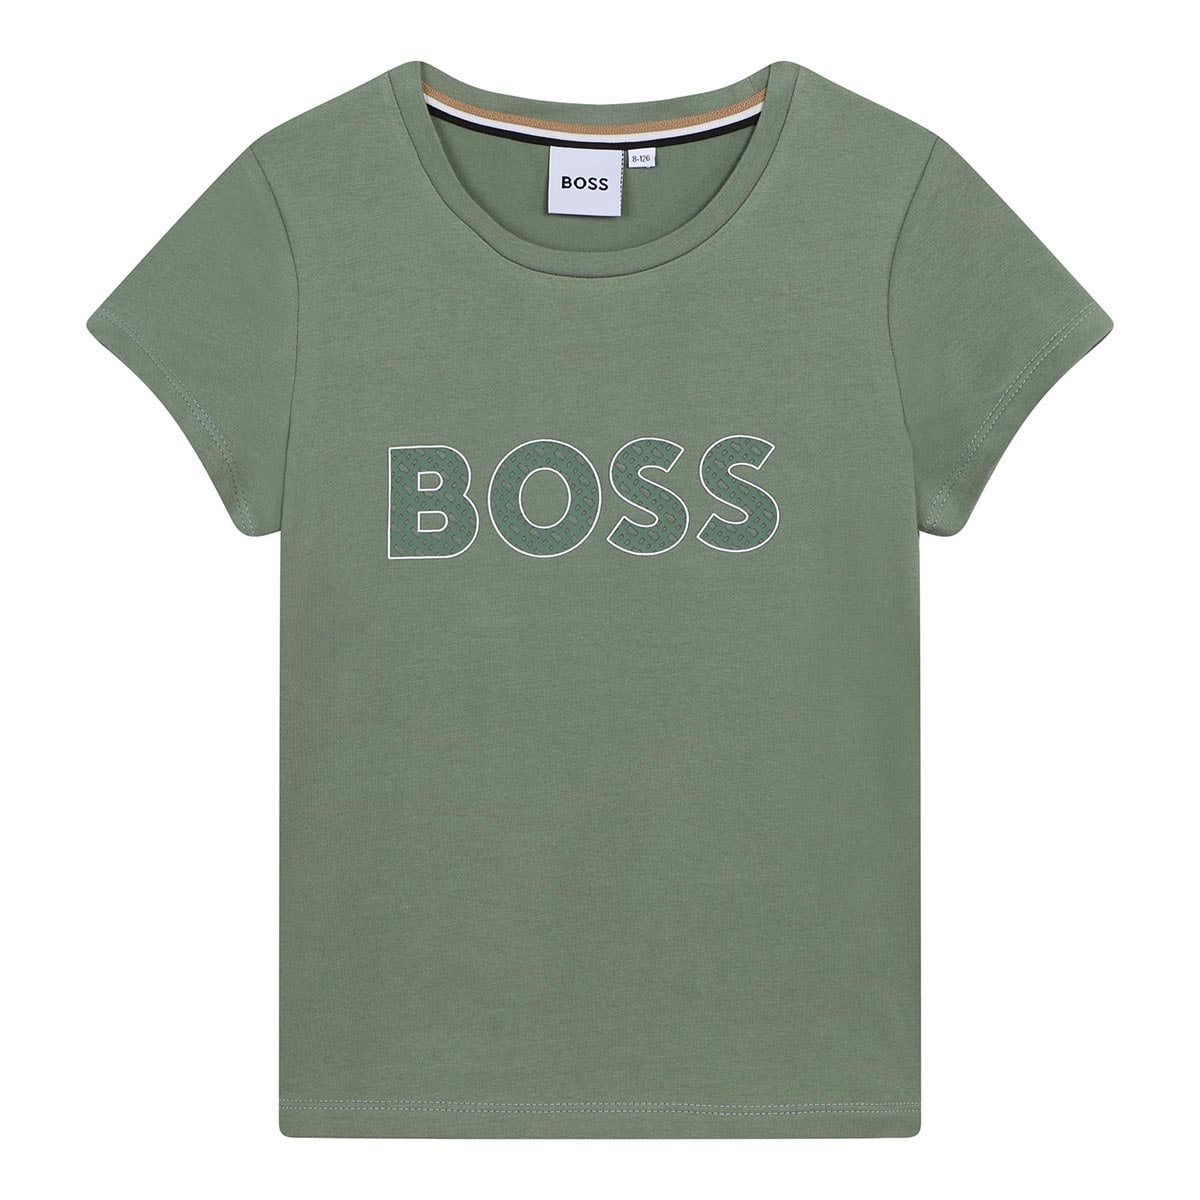 חולצת טי שרט BOSS הדפס לוגו לילדות